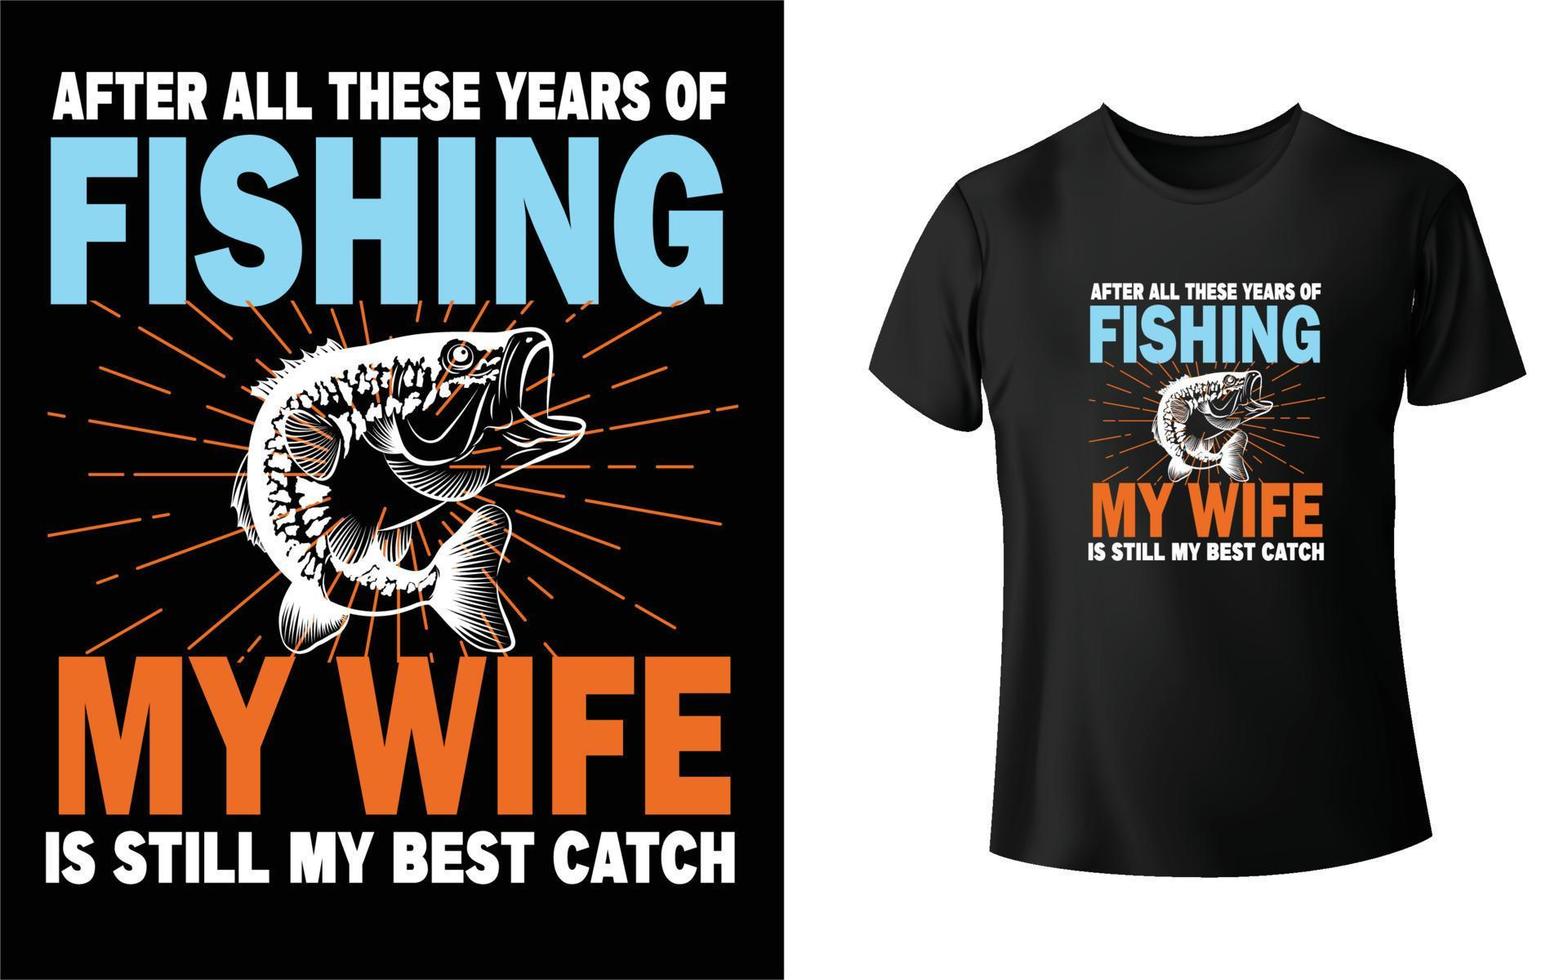 design de camiseta de pesca vetor